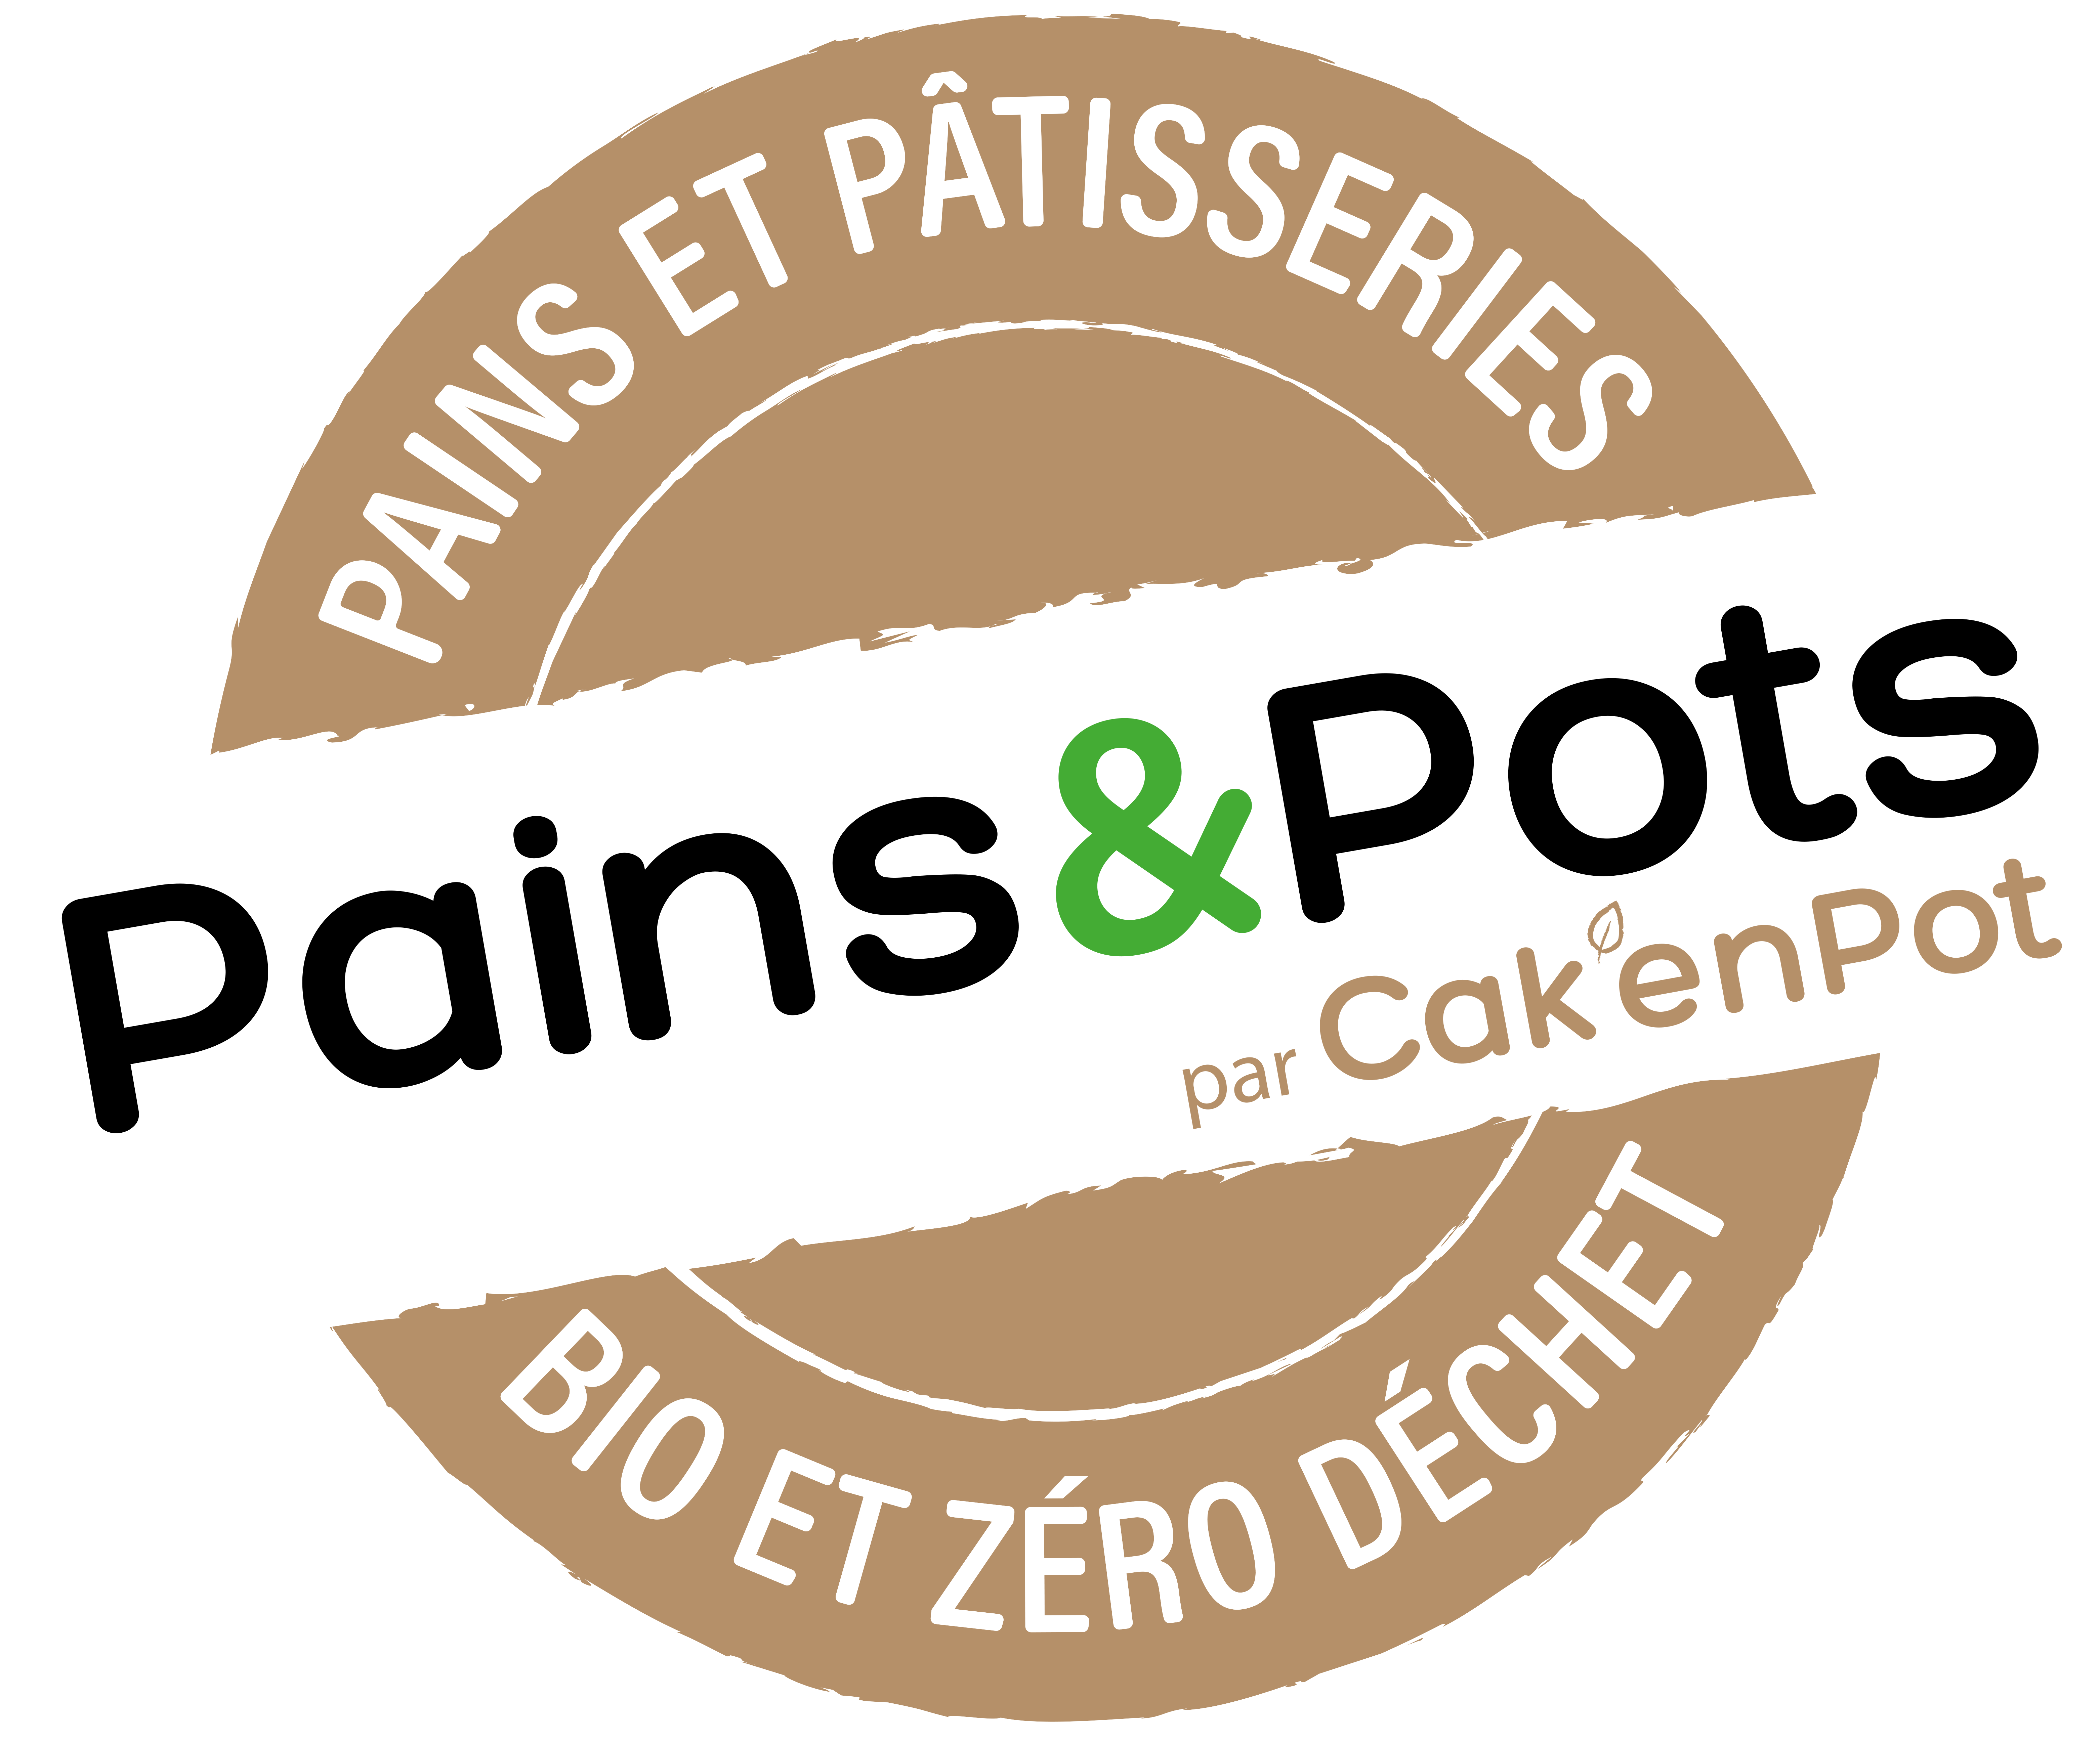 Pains & Pots - Cak'En Pot 5